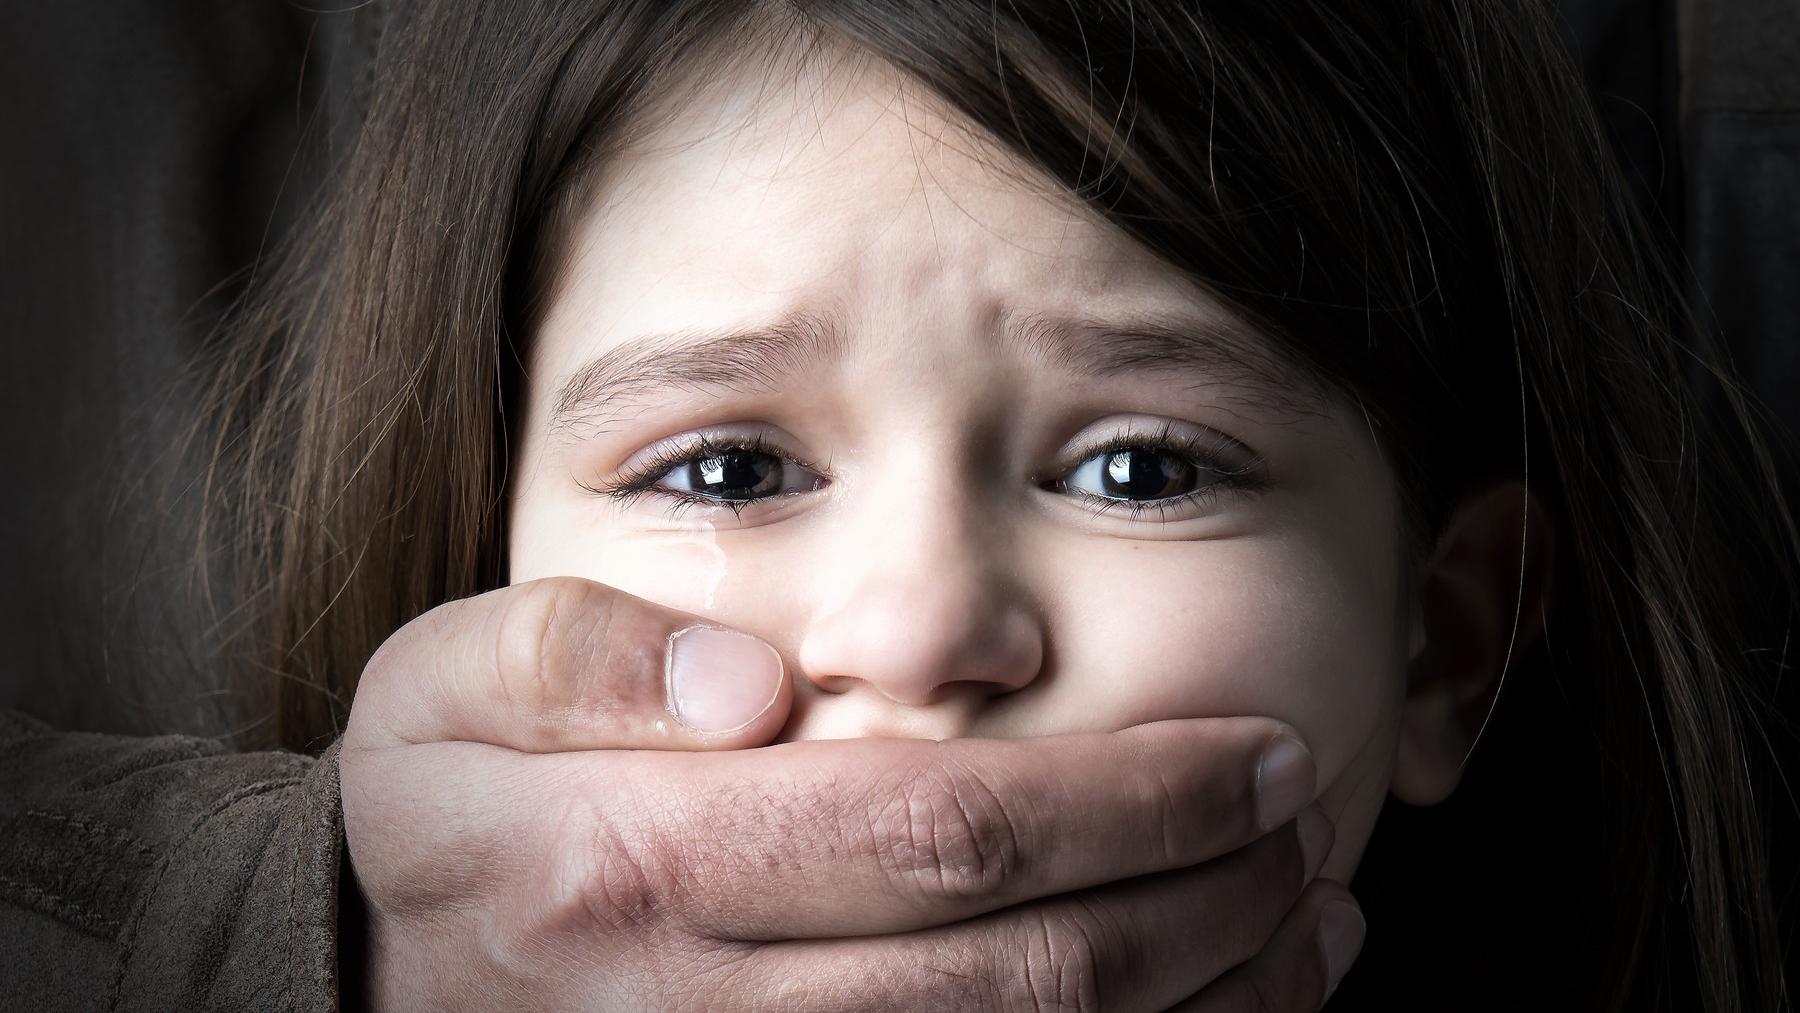 Pokus o únos 6-ročného dievčatka zachytila kamera: Čo deti naučit, aby sa  takémuto niečomu ubránili? | Najmama.sk